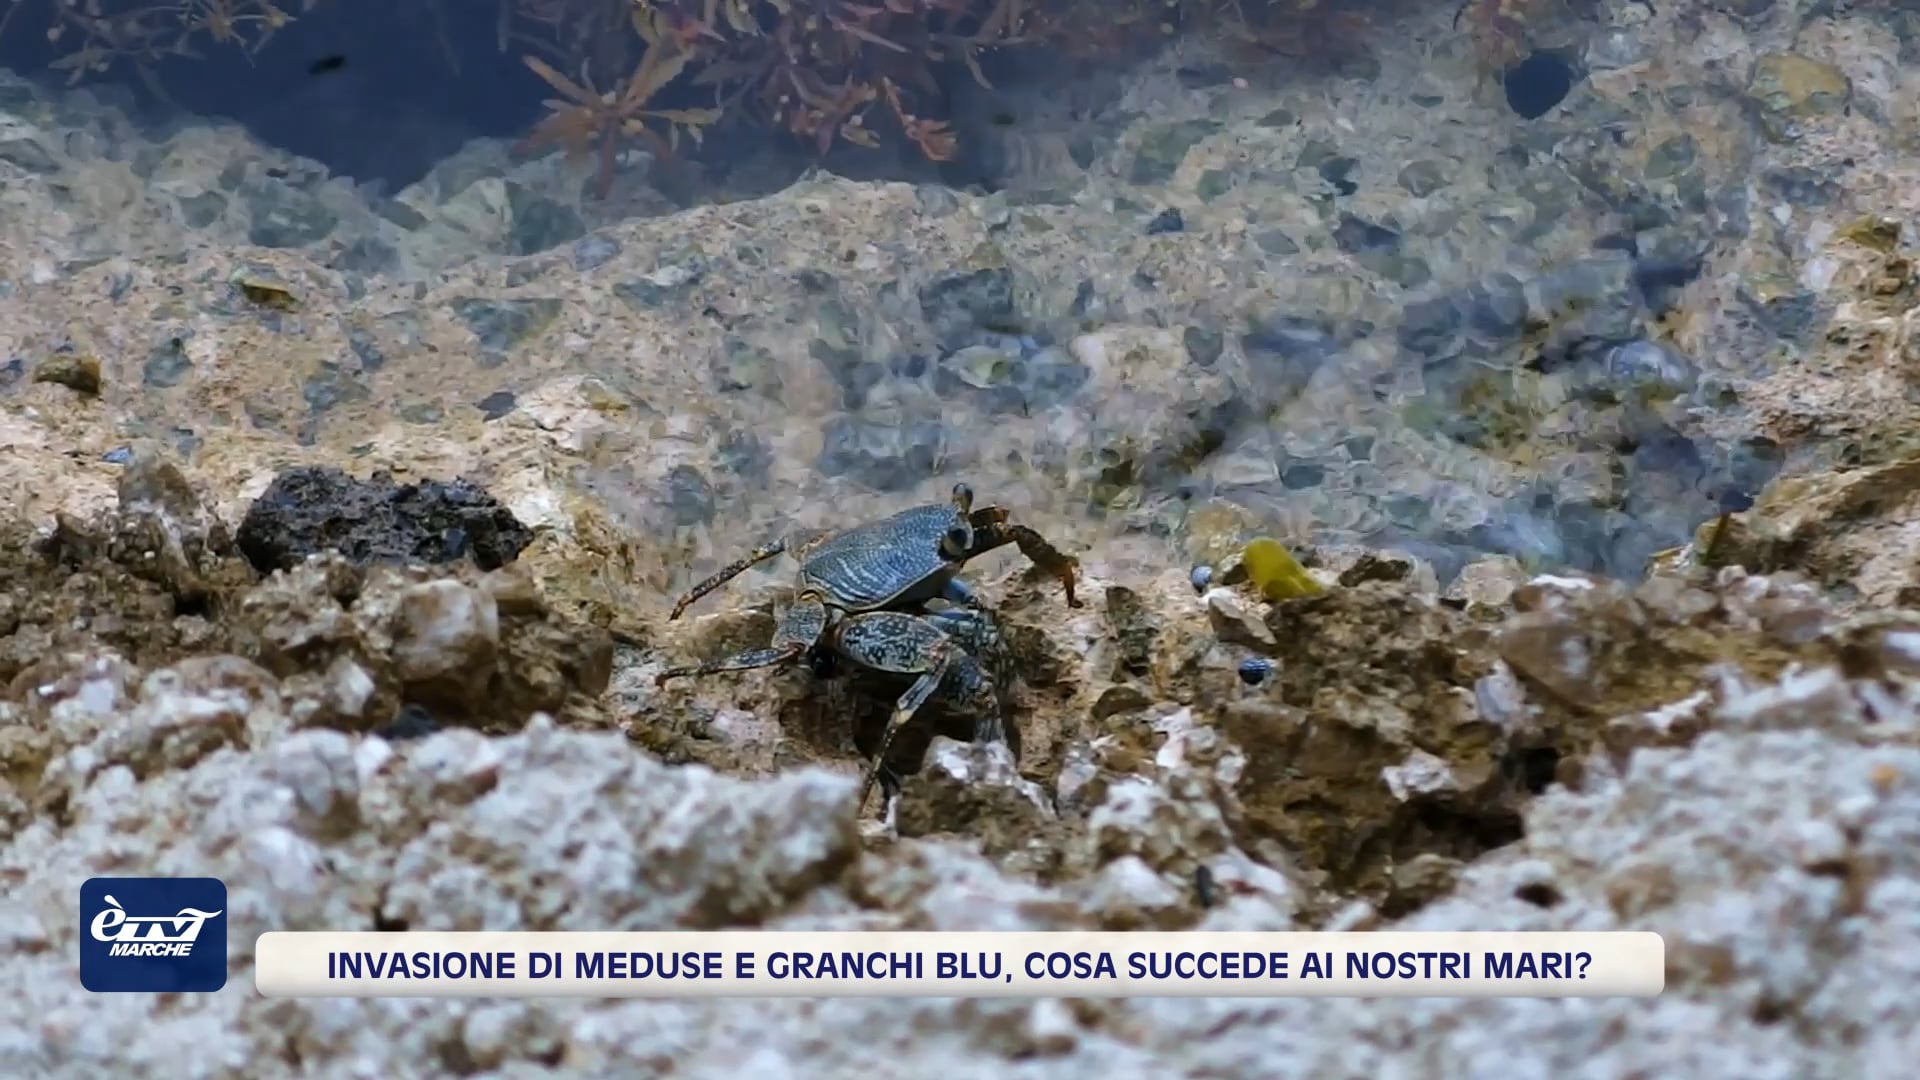 Invasione di meduse e granchi blu, cosa succede ai nostri mari? - VIDEO 